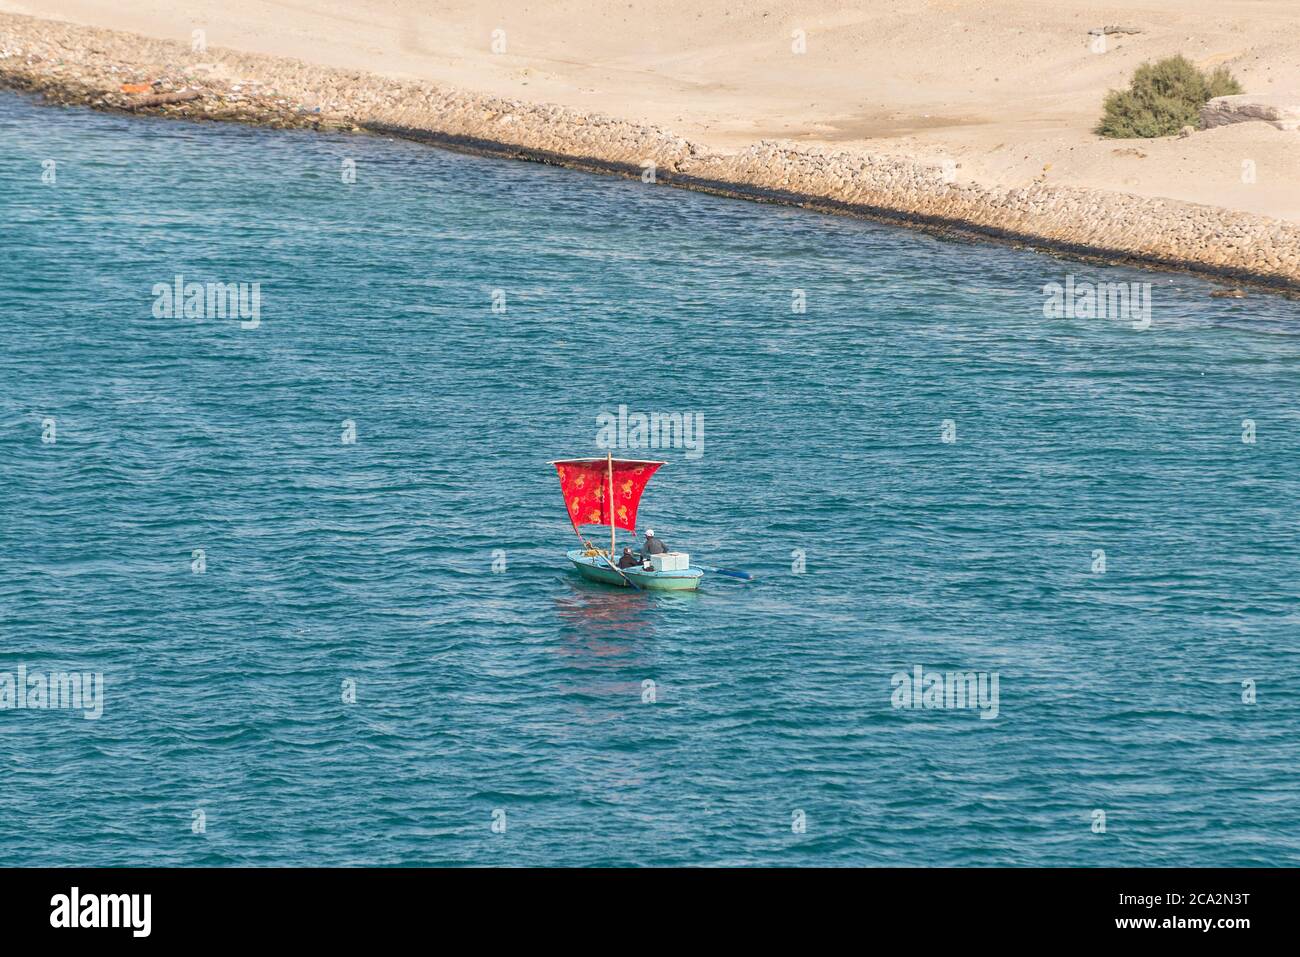 Ismailia, Egypte - 14 novembre 2019 : pêcheurs dans un bateau en bois sous une voile rouge le long du canal de Suez près d'Ismailia, Egypte, Afrique. Banque D'Images